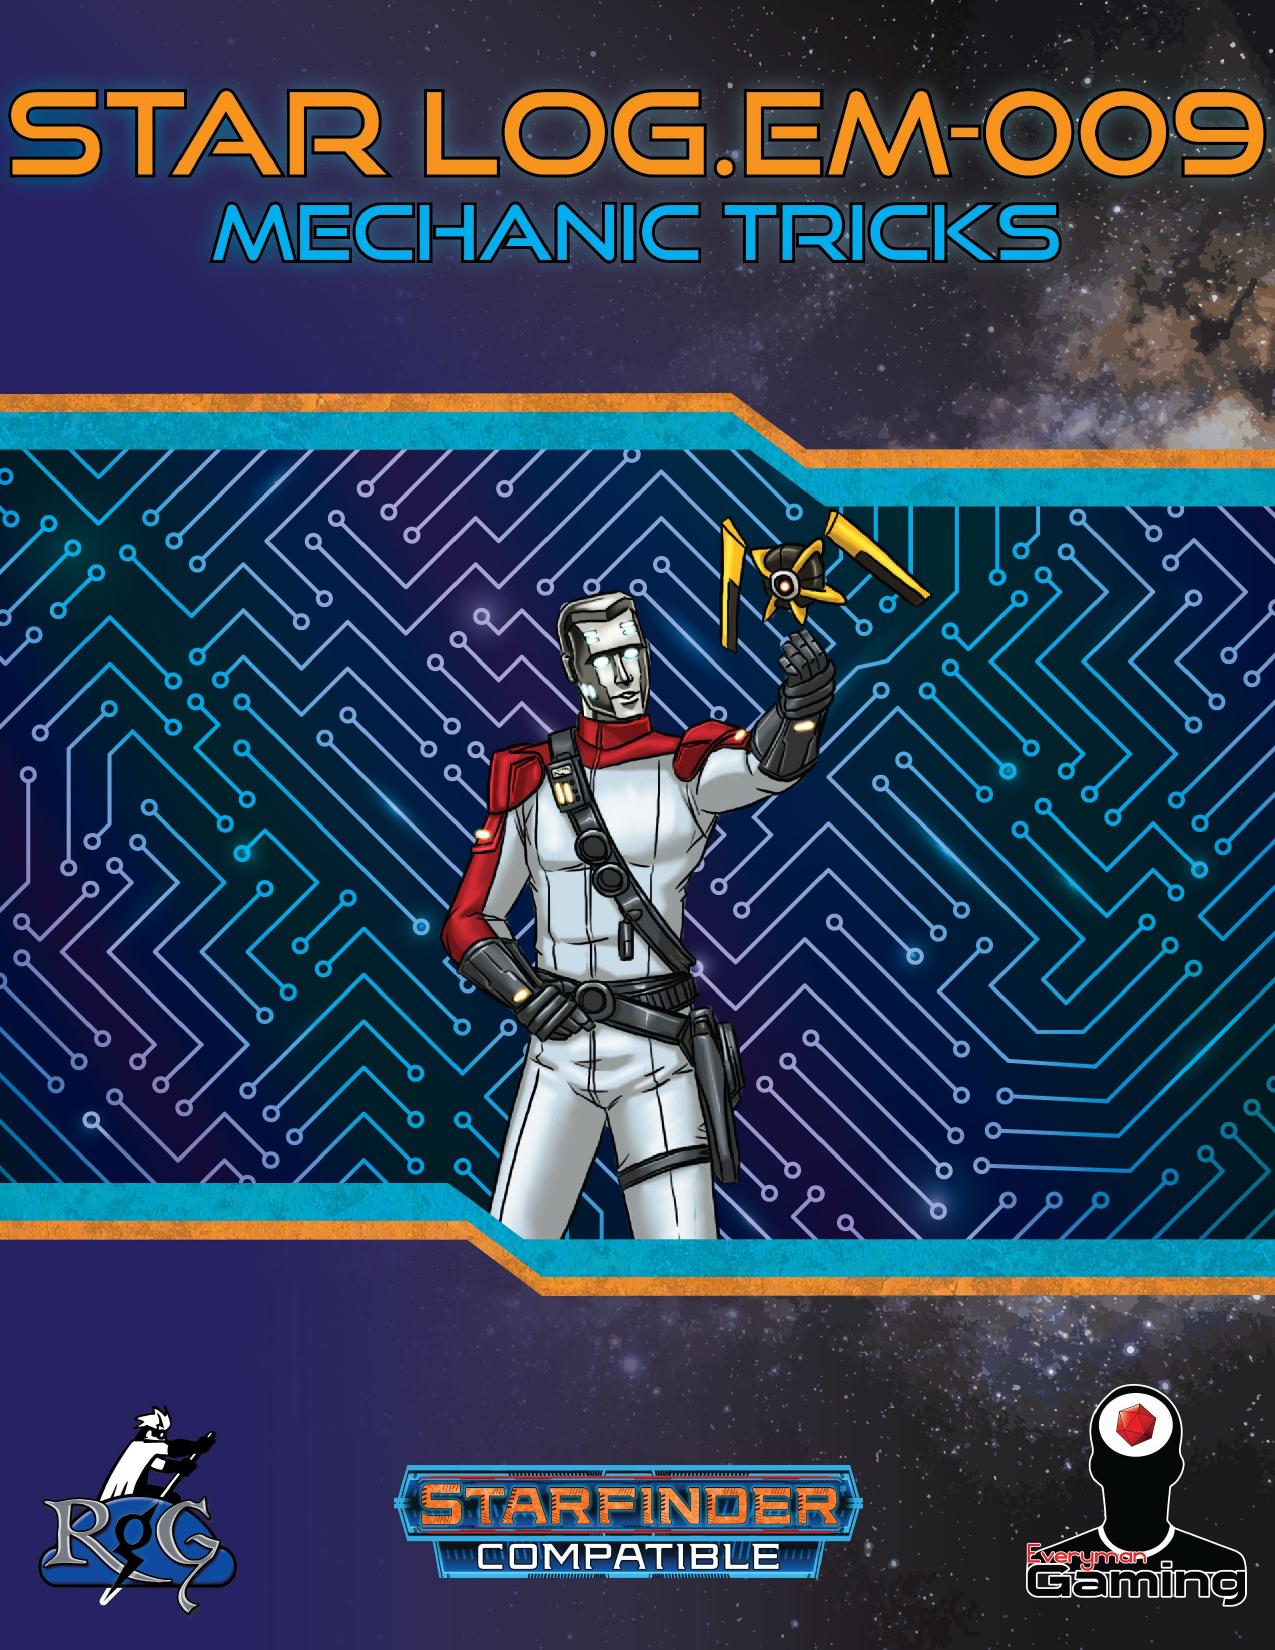 Star LogEM-009 Mechanic Tricks